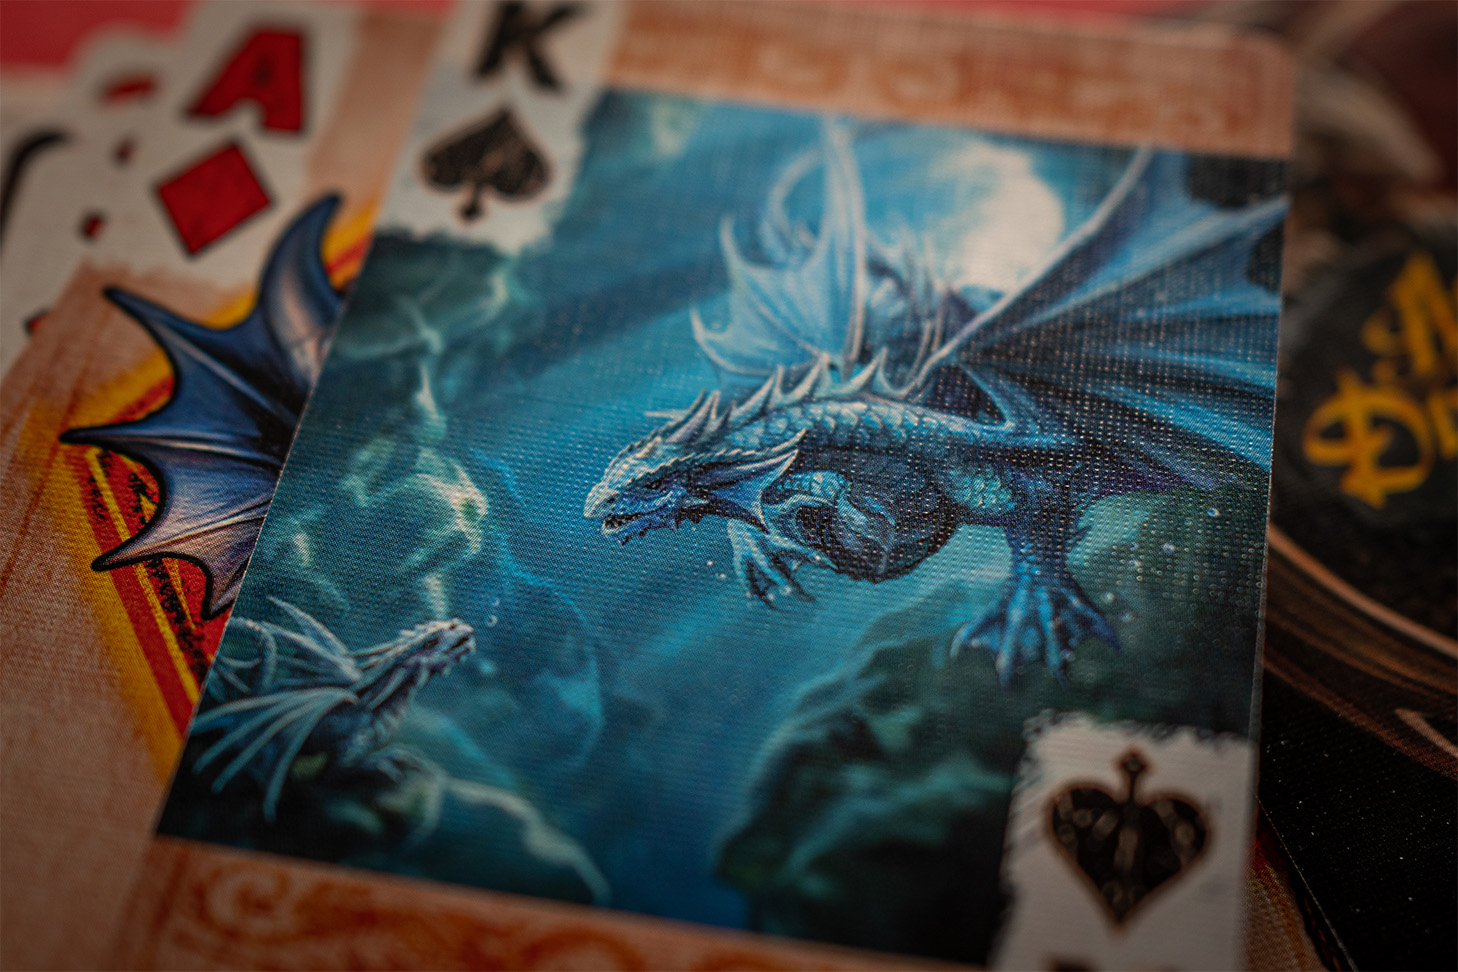 Das Bicycle® Age of Dragons König Ass mit einem majestätischen blauen Drachen: Diese exklusive Spielkarte zeichnet sich durch ein atemberaubendes Design aus und eignet sich perfekt für gute Kartenspiele, Zauberkarten und Magie. Bestellen Sie jetzt die Bicycle® Age of Dragons Spielkarten und erleben Sie unvergessliche Spieleabende mit einem Hauch von Fantasie und Abenteuer!